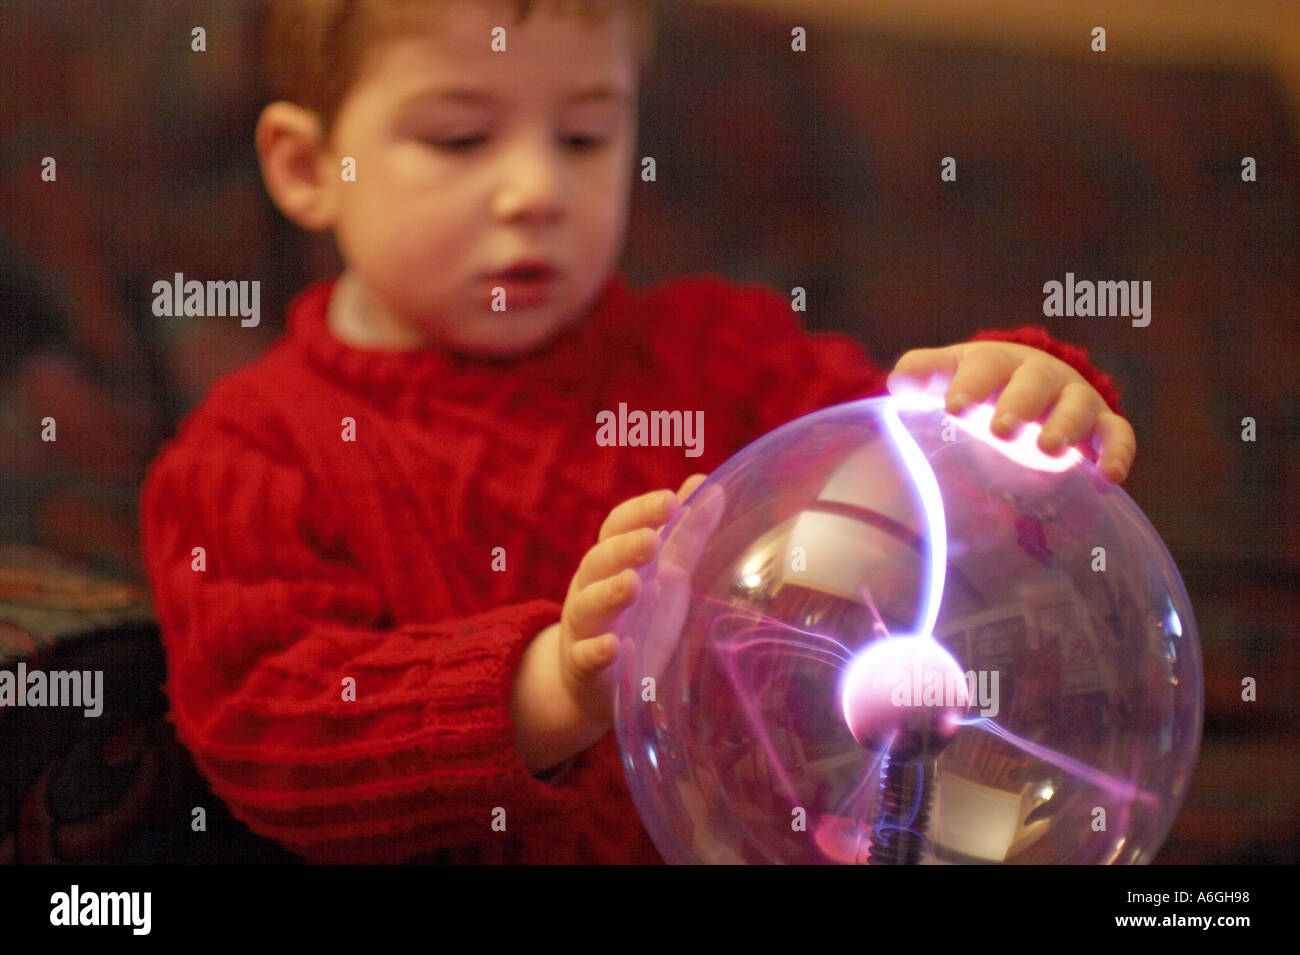 Neugierige neugierige junge betrachten und berühren einen Plasma Kugel Ball wissenschaftlichen Spielzeug Stockfoto